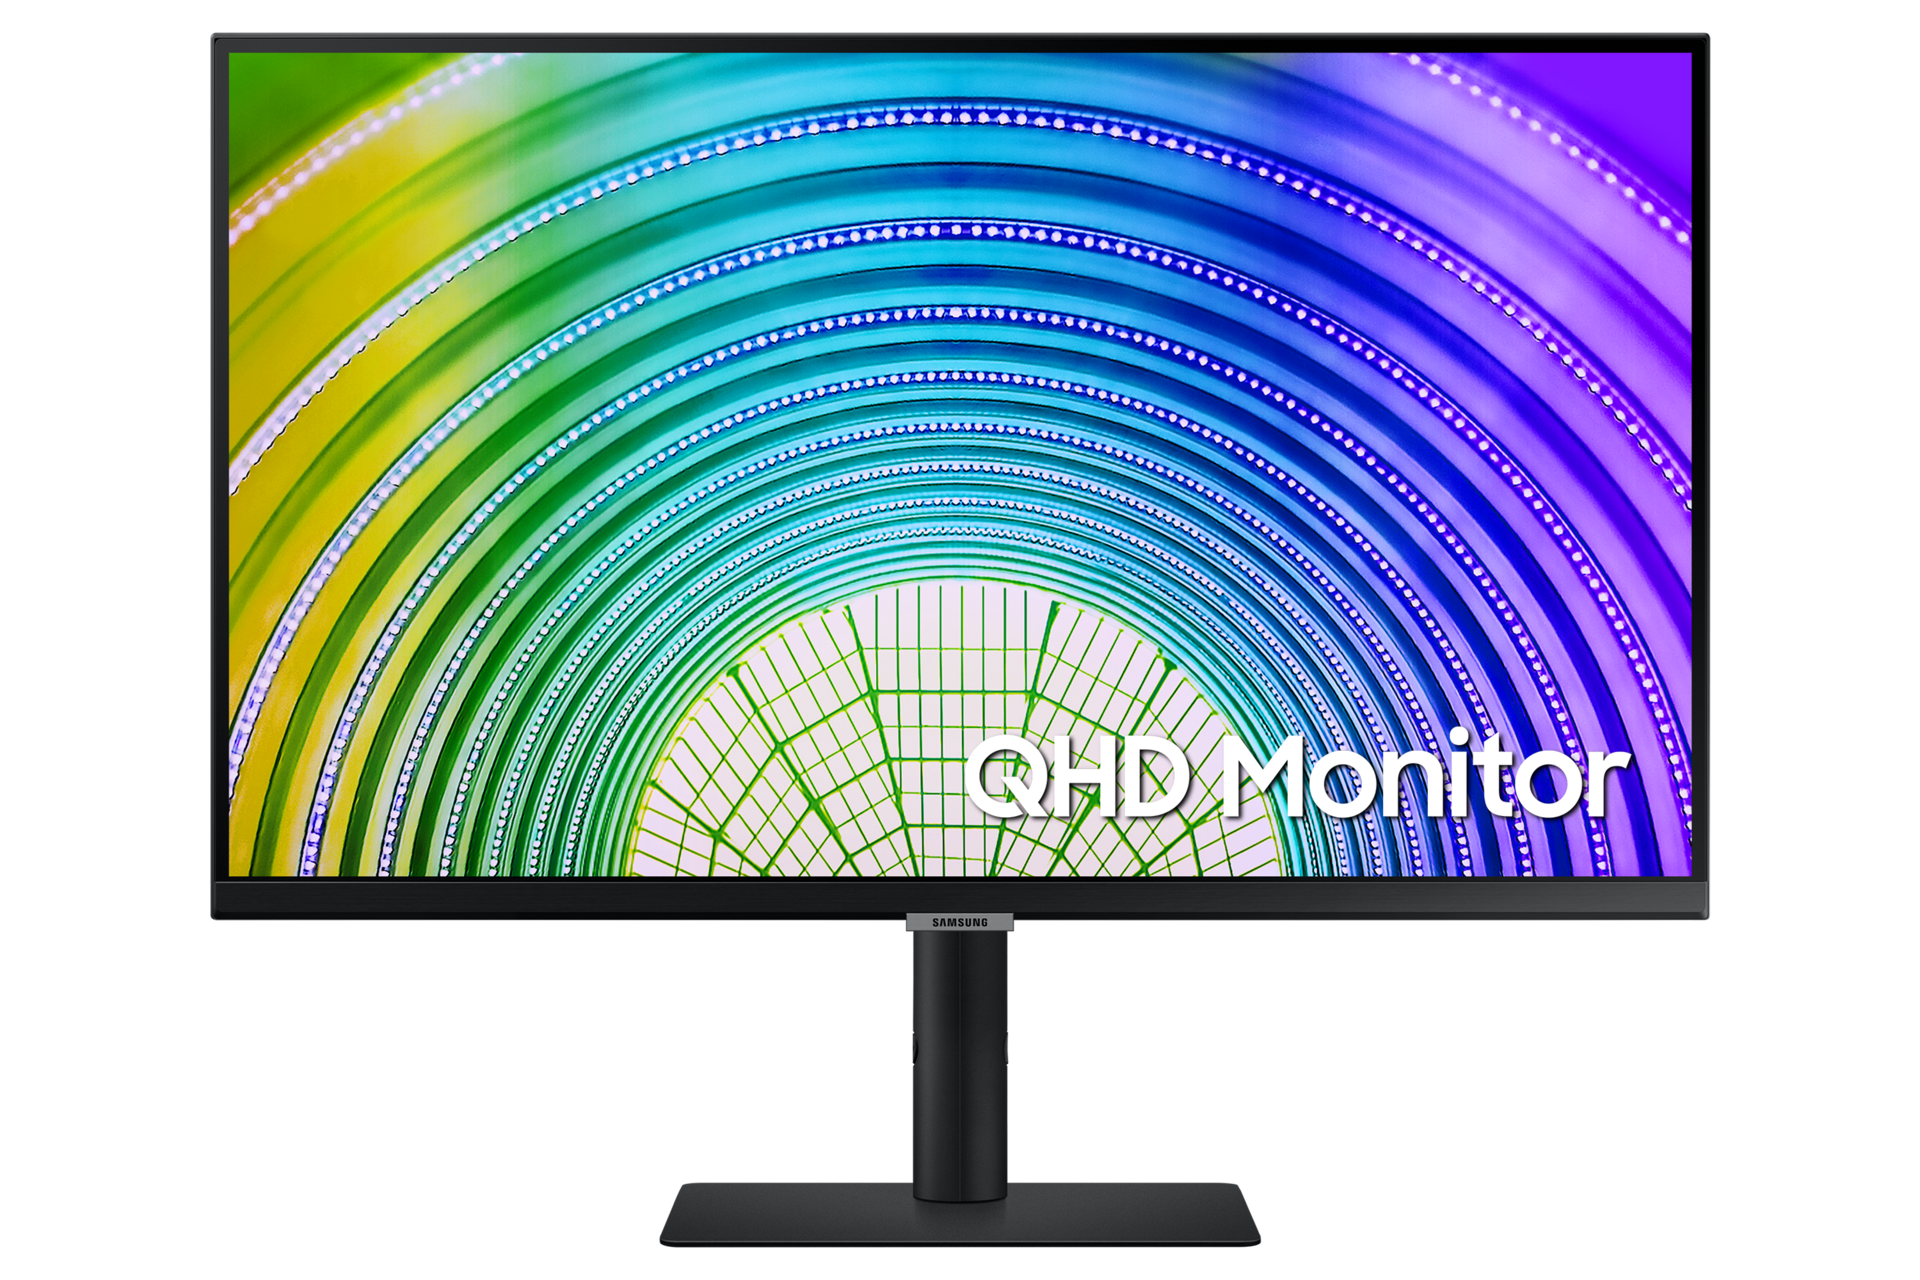 Mặt chính diện của màn hình thông minh QHD Monitor bản màu đen cho thấy thiết kế sang trọng và hiện đại